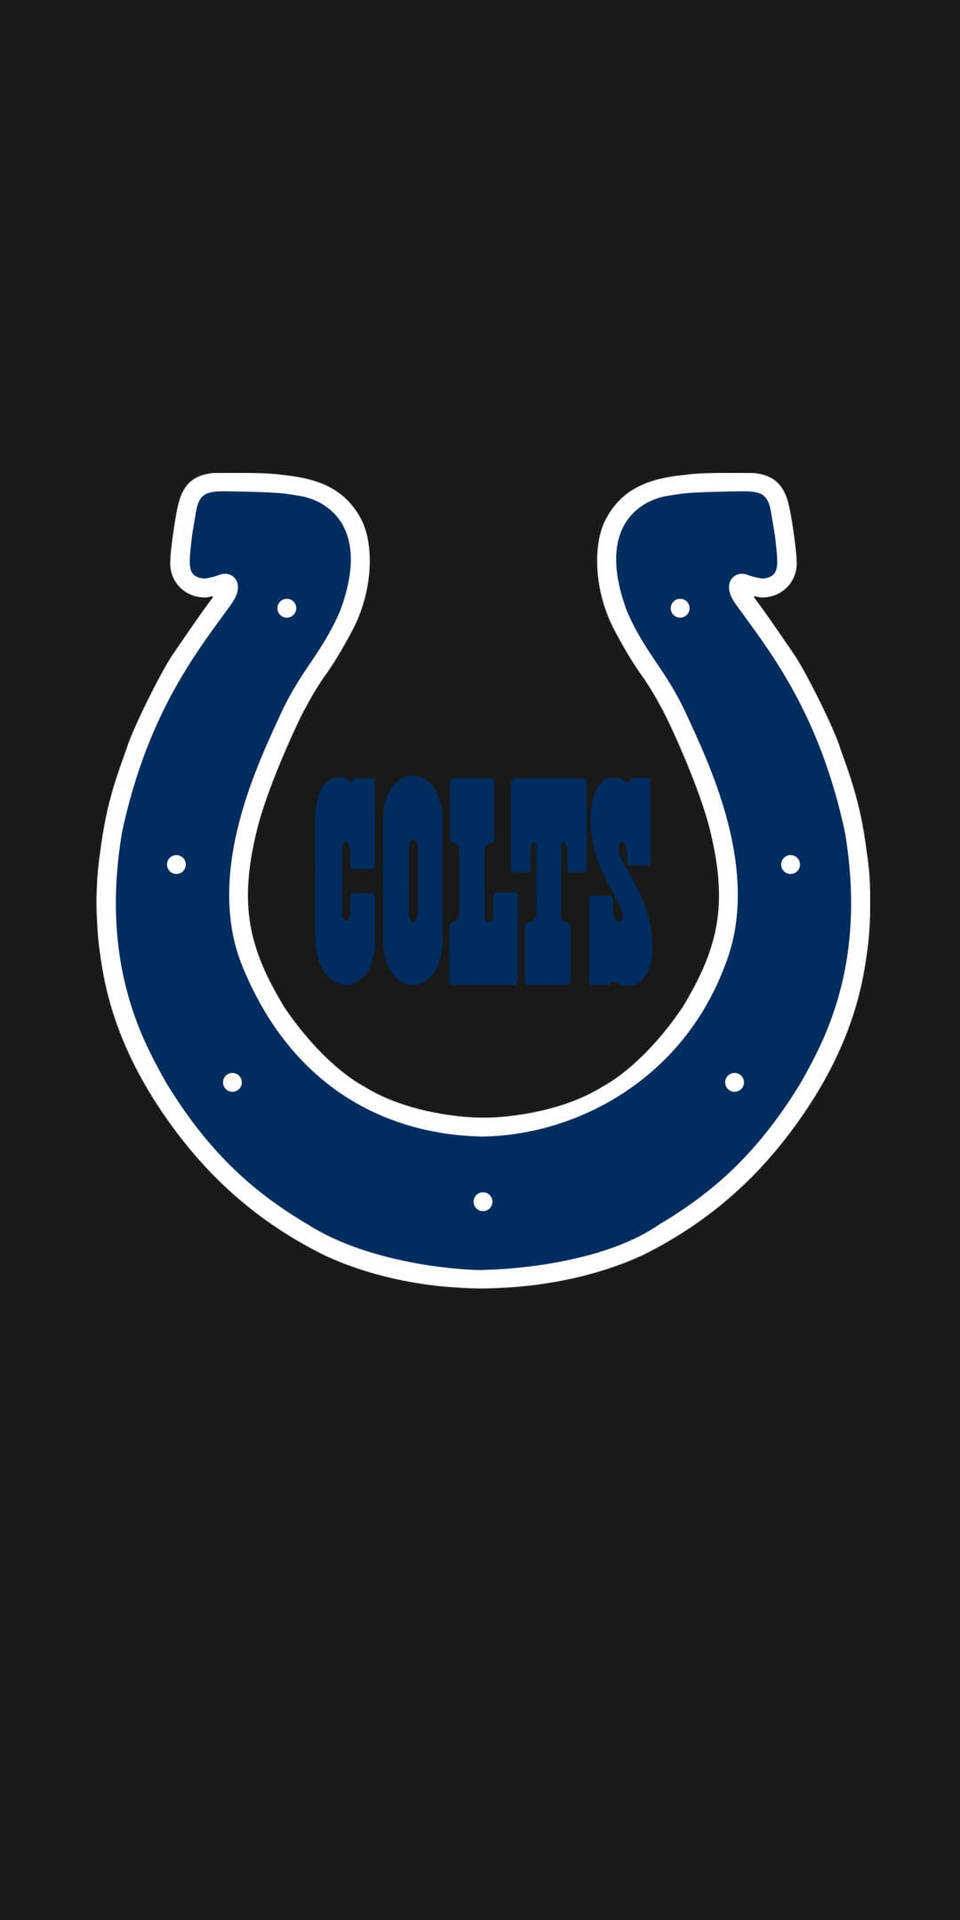 Indianapolis Colts Horseshoe Nfl Team Logo